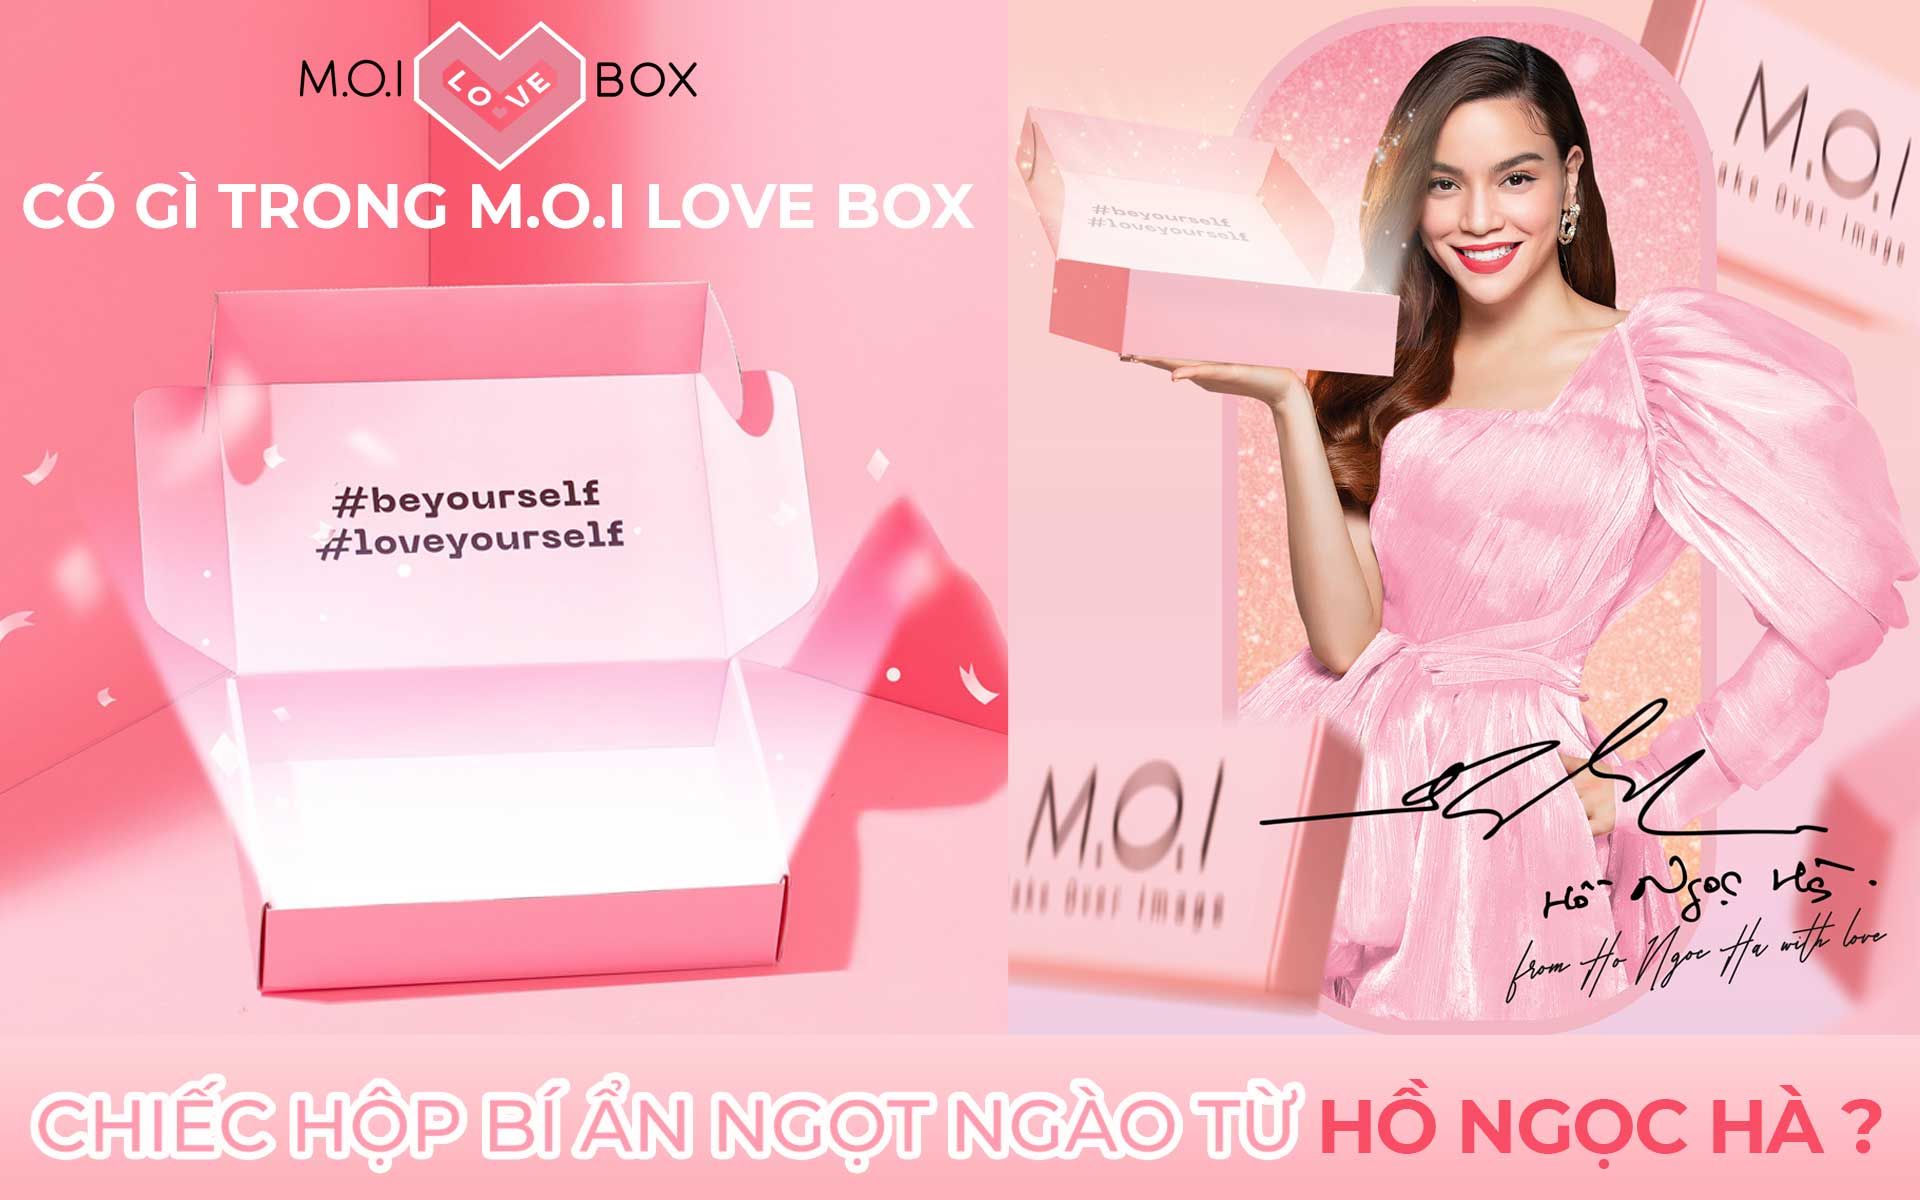 Có gì trong M.O.I LOVE BOX - Chiếc hộp bí ẩn ngọt ngào từ Hồ Ngọc Hà?